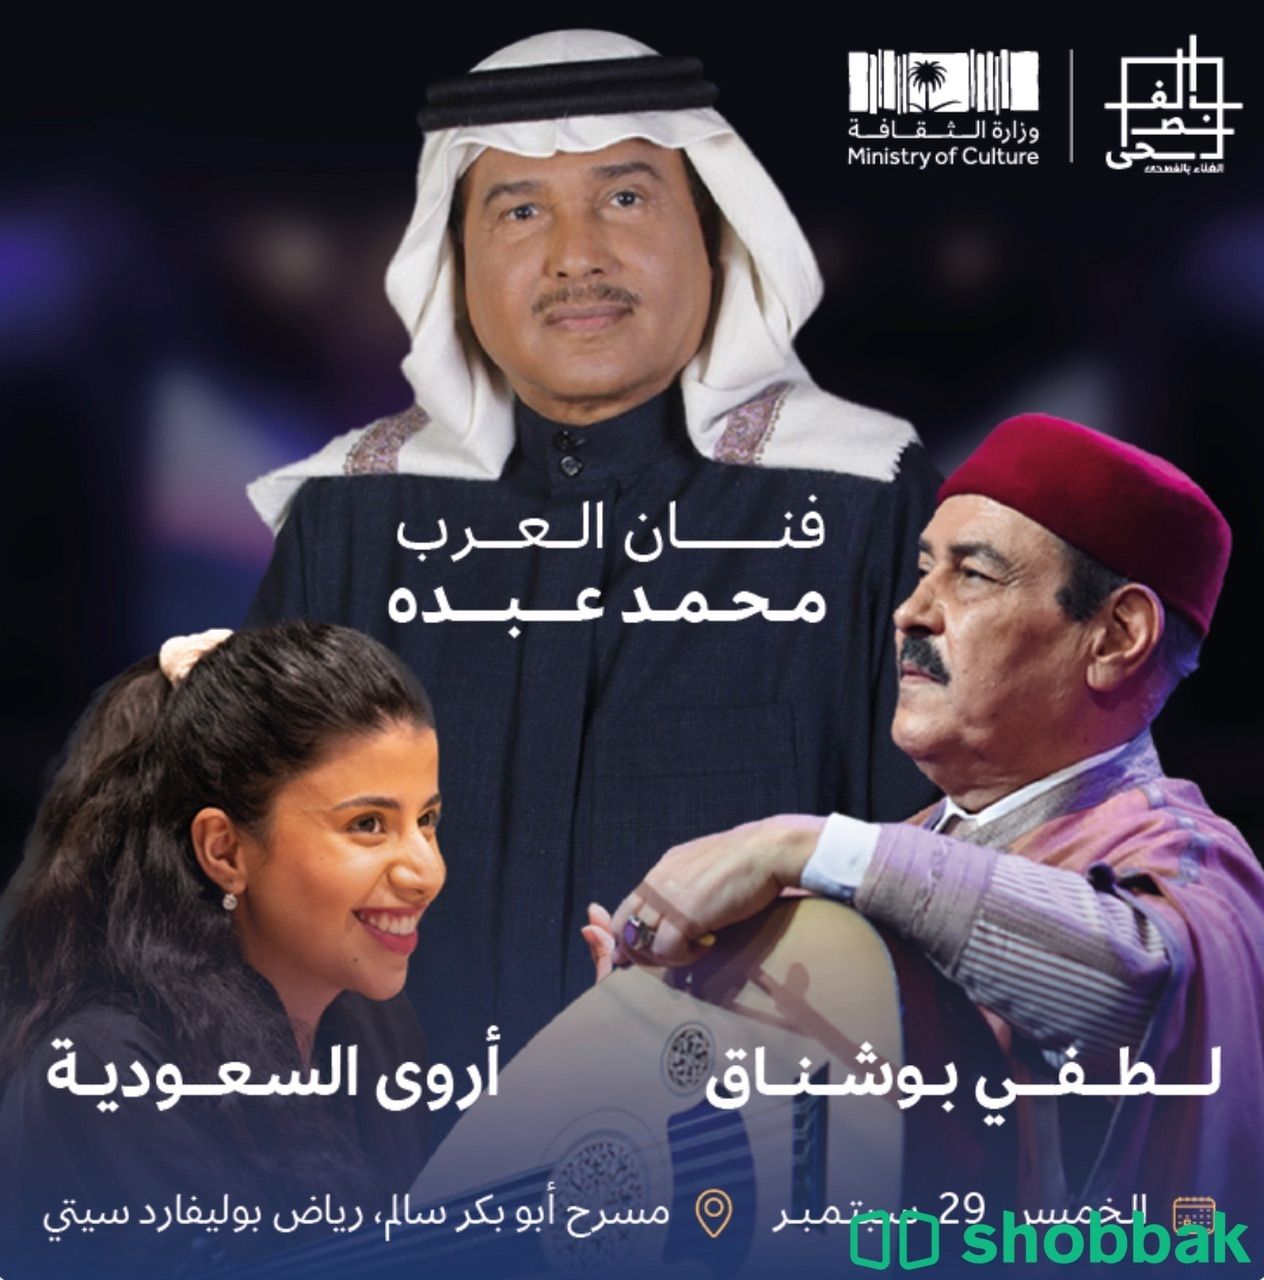 الفنان محمد عبده والفنانة اروى في مهرجان الغناء بالفصحى Shobbak Saudi Arabia